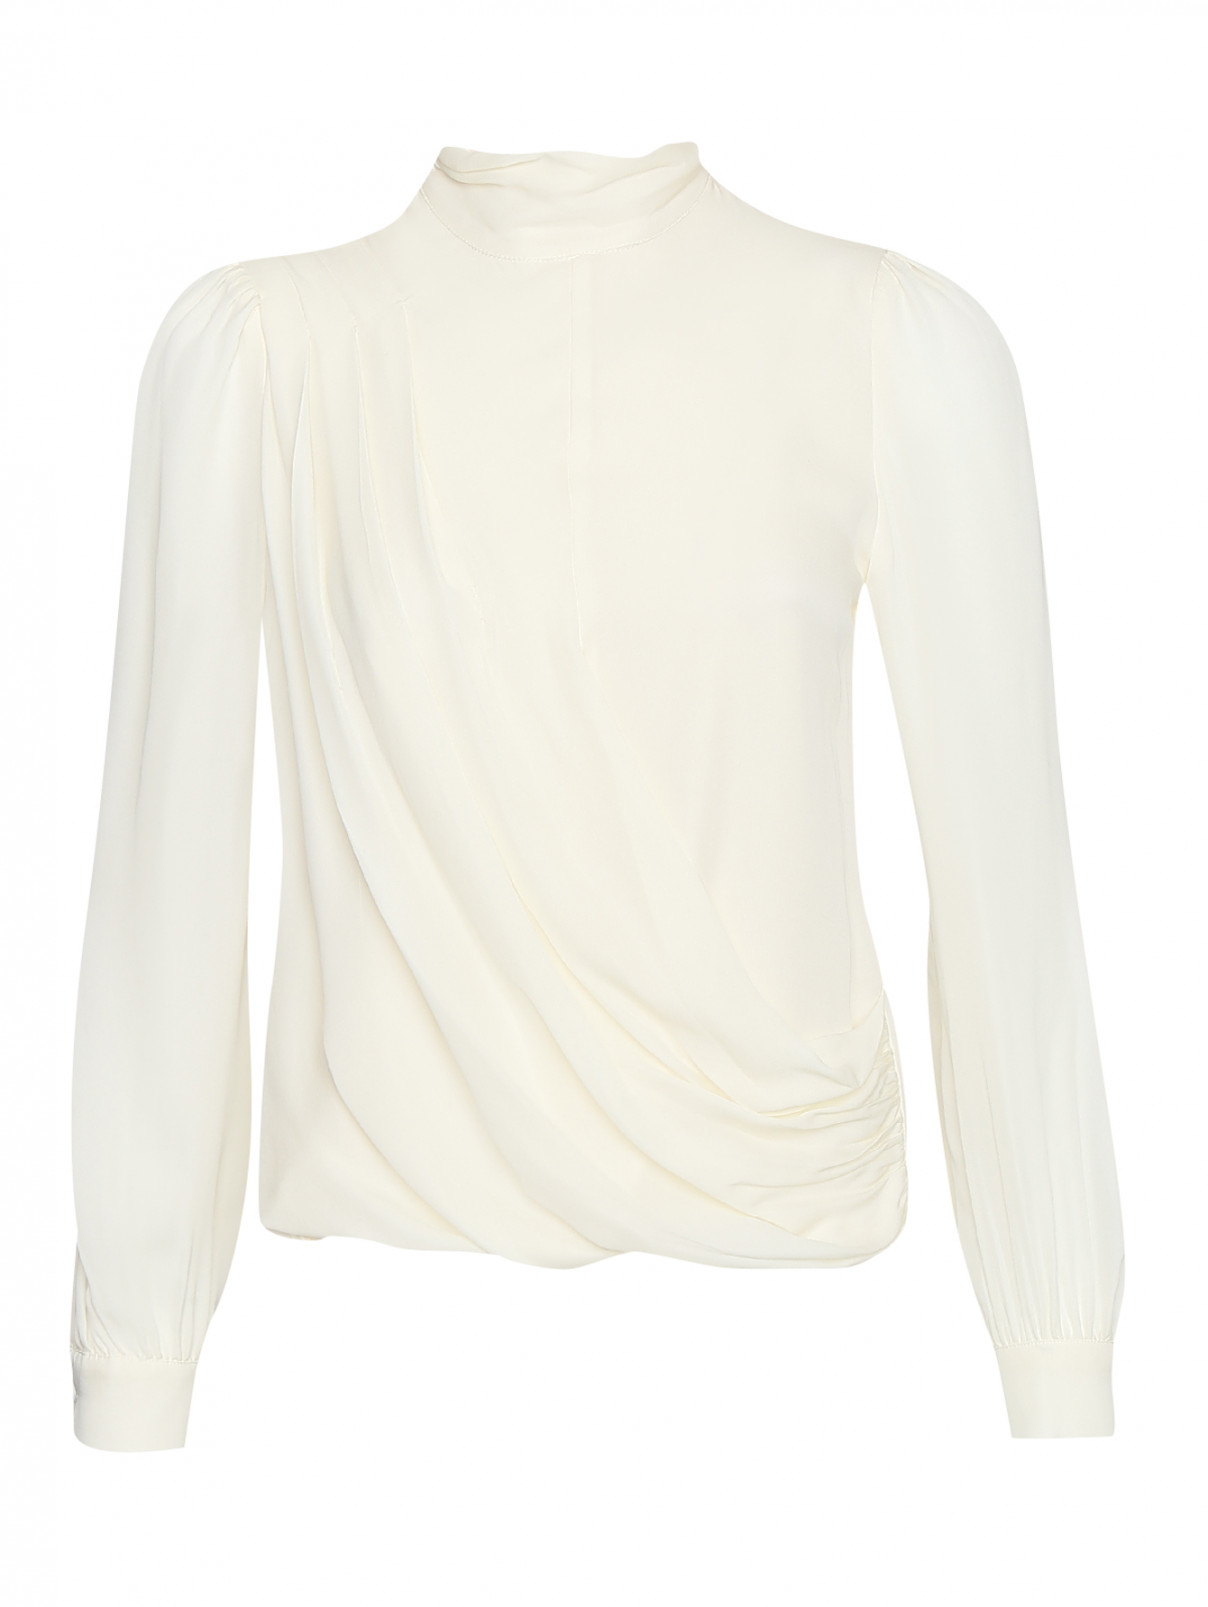 Блуза шелковая с декоративной сборкой Michael by Michael Kors  –  Общий вид  – Цвет:  Бежевый